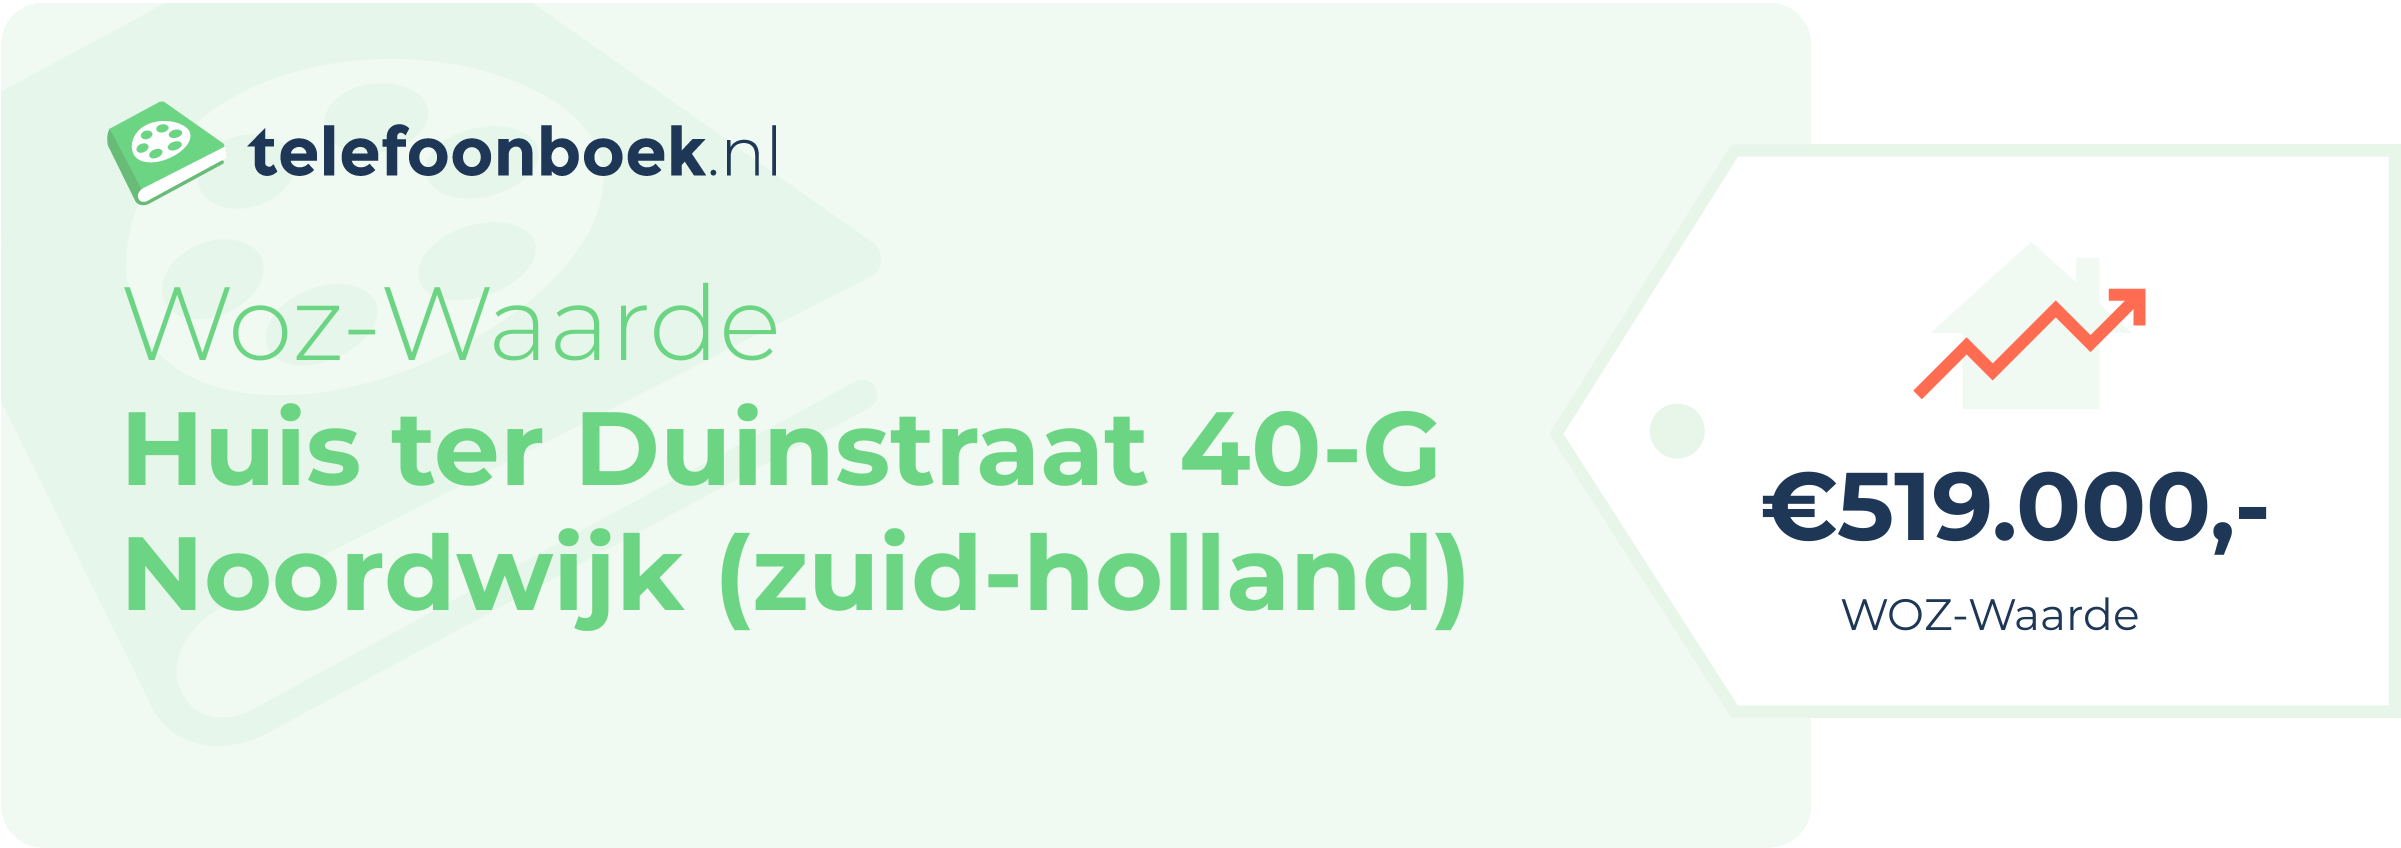 WOZ-waarde Huis Ter Duinstraat 40-G Noordwijk (Zuid-Holland)